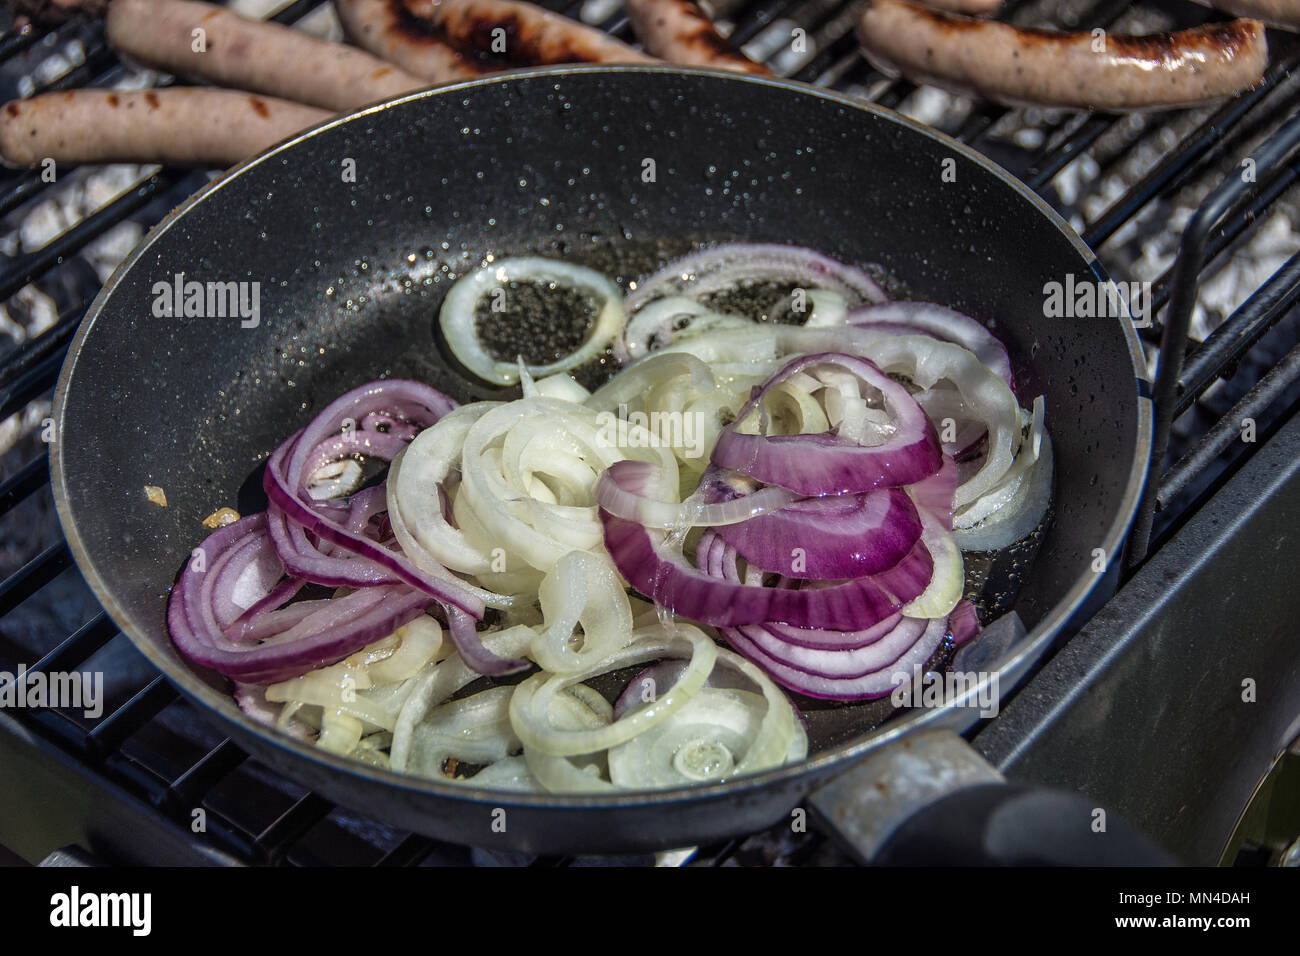 Zwiebeln braten in einer Pfanne auf einem Grill Stockfotografie - Alamy